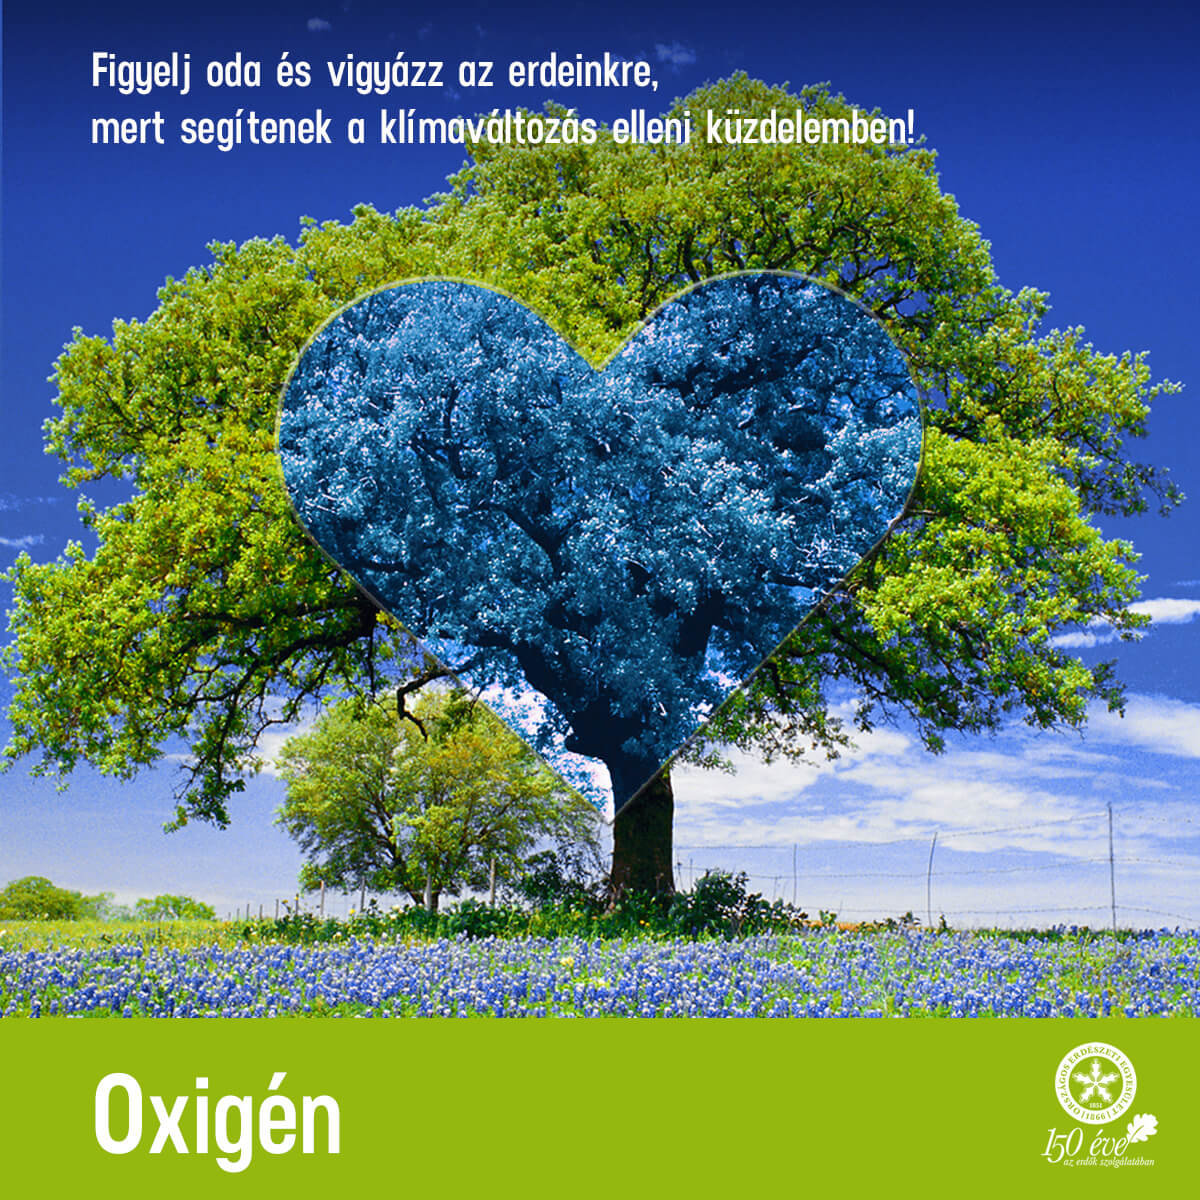 6 oxigen